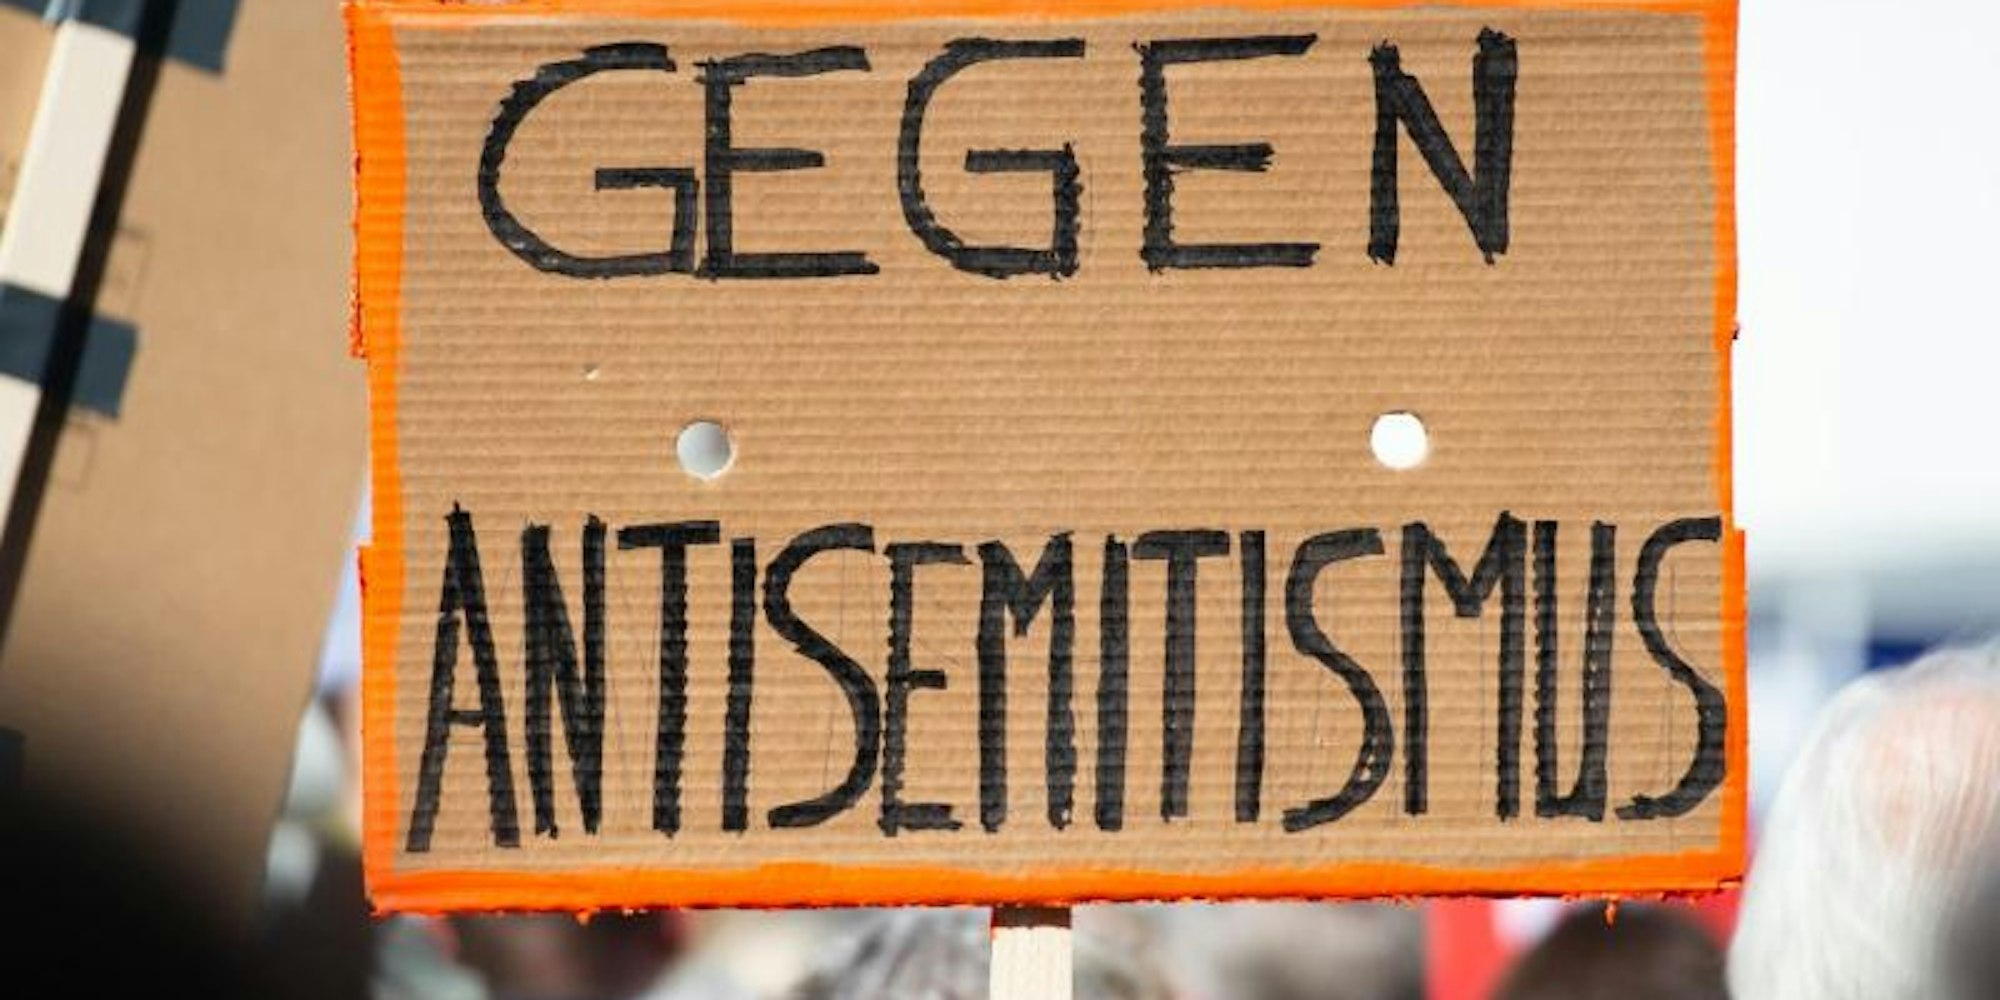 Das Archivfoto zeigt eine Kundgebung gegen Antisemitismus in Hannover.